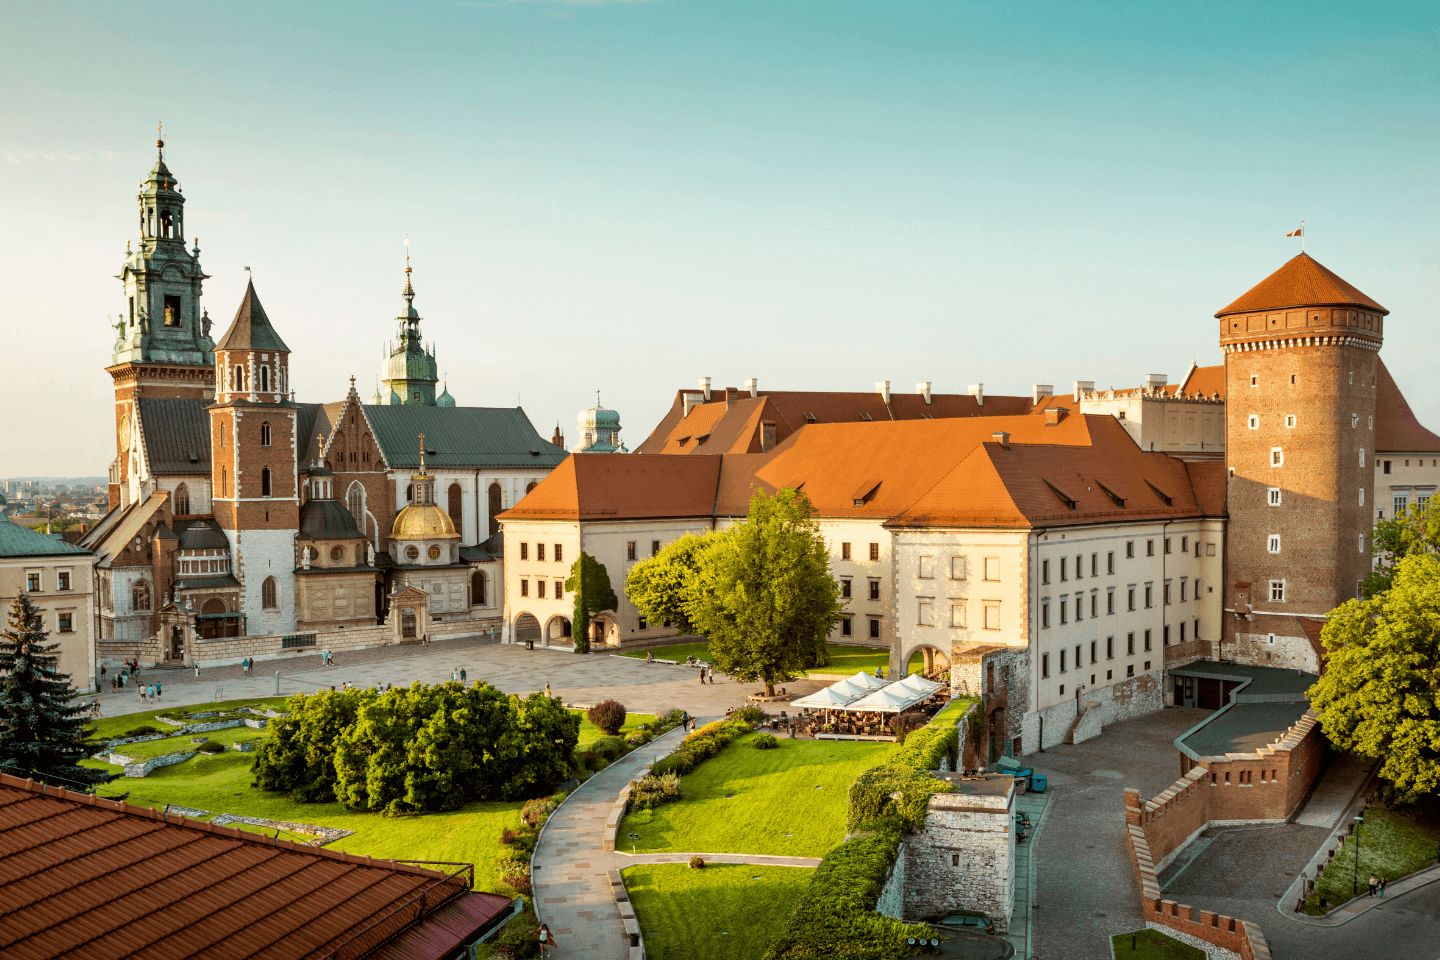 #1 Wawel Castle - UNESCO